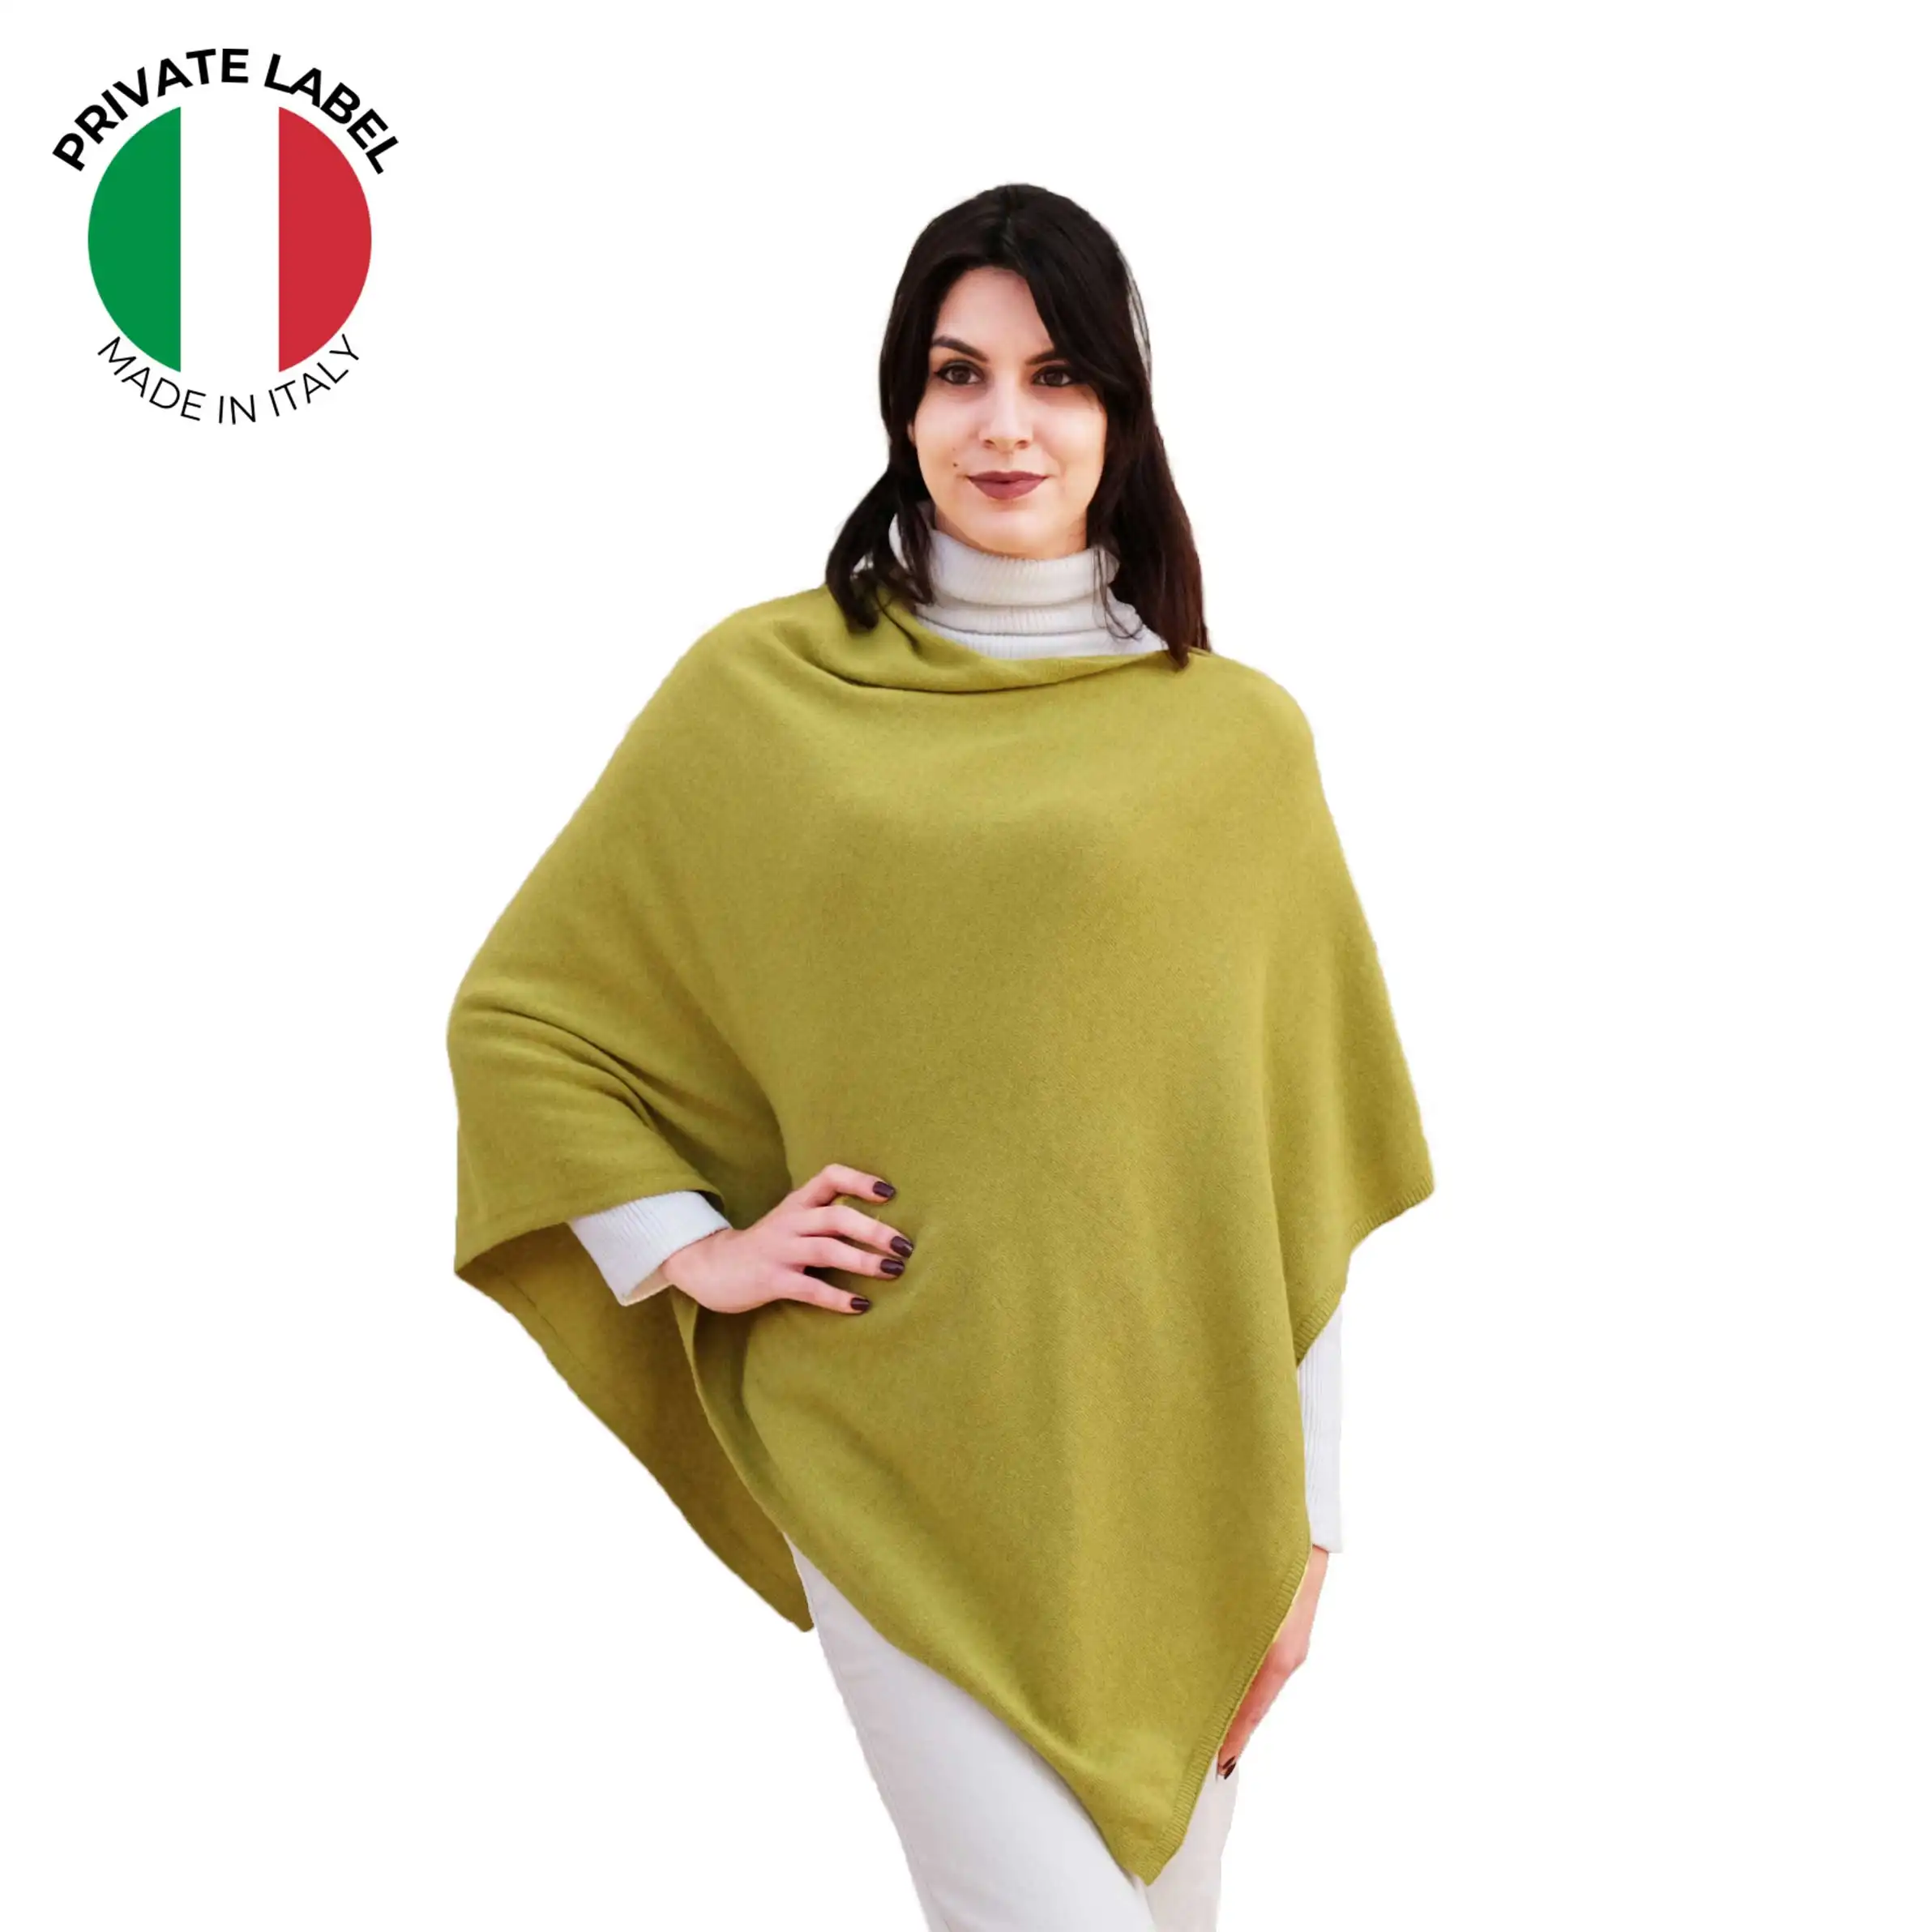 Vendita all'ingrosso su misura italiano grande qualità Poncho caldo lana e Cashmere miscela scrollata di spalle per l'autunno inverno acido verde stola